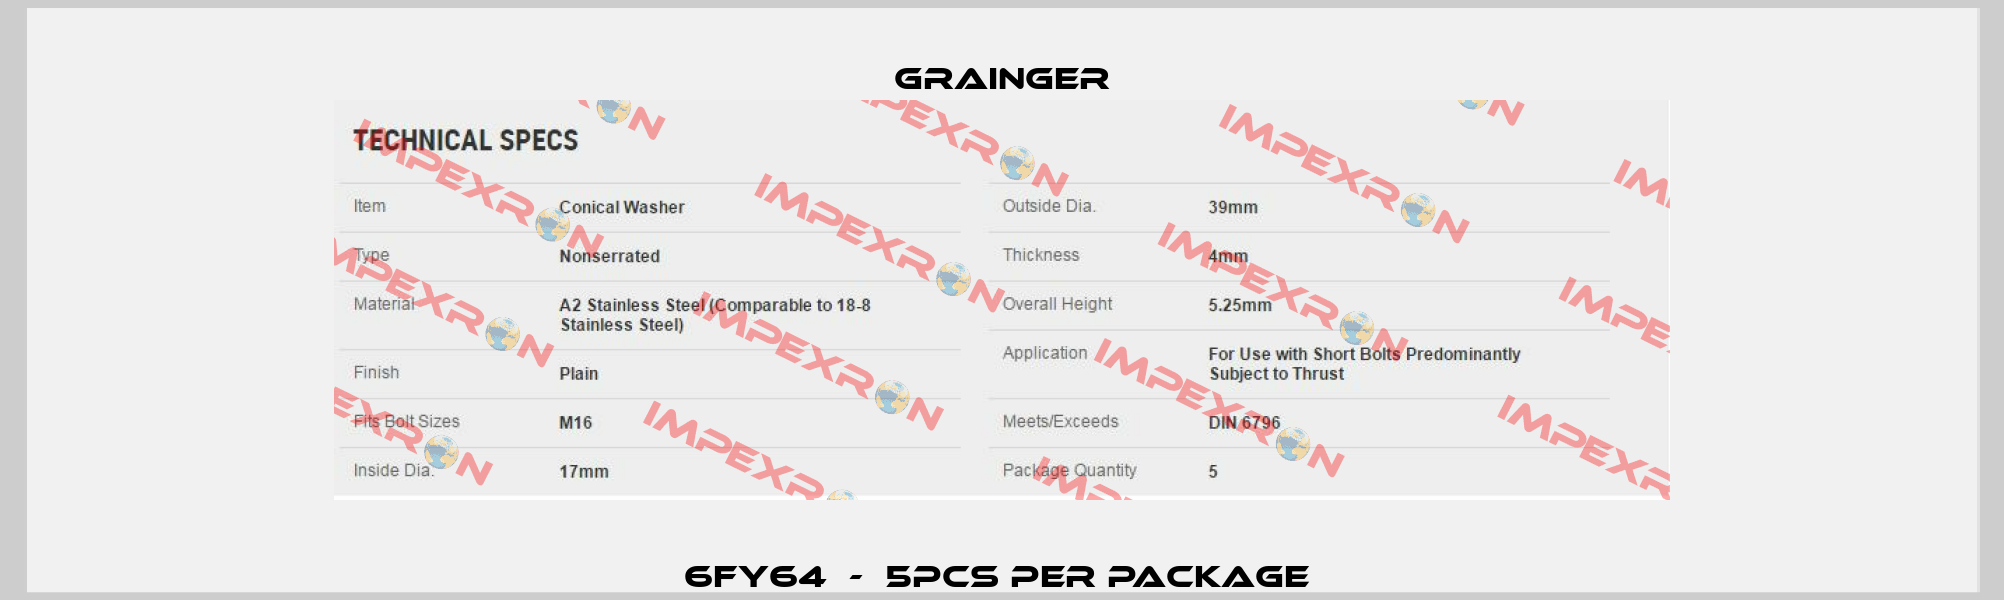 6FY64  -  5pcs per package  Grainger